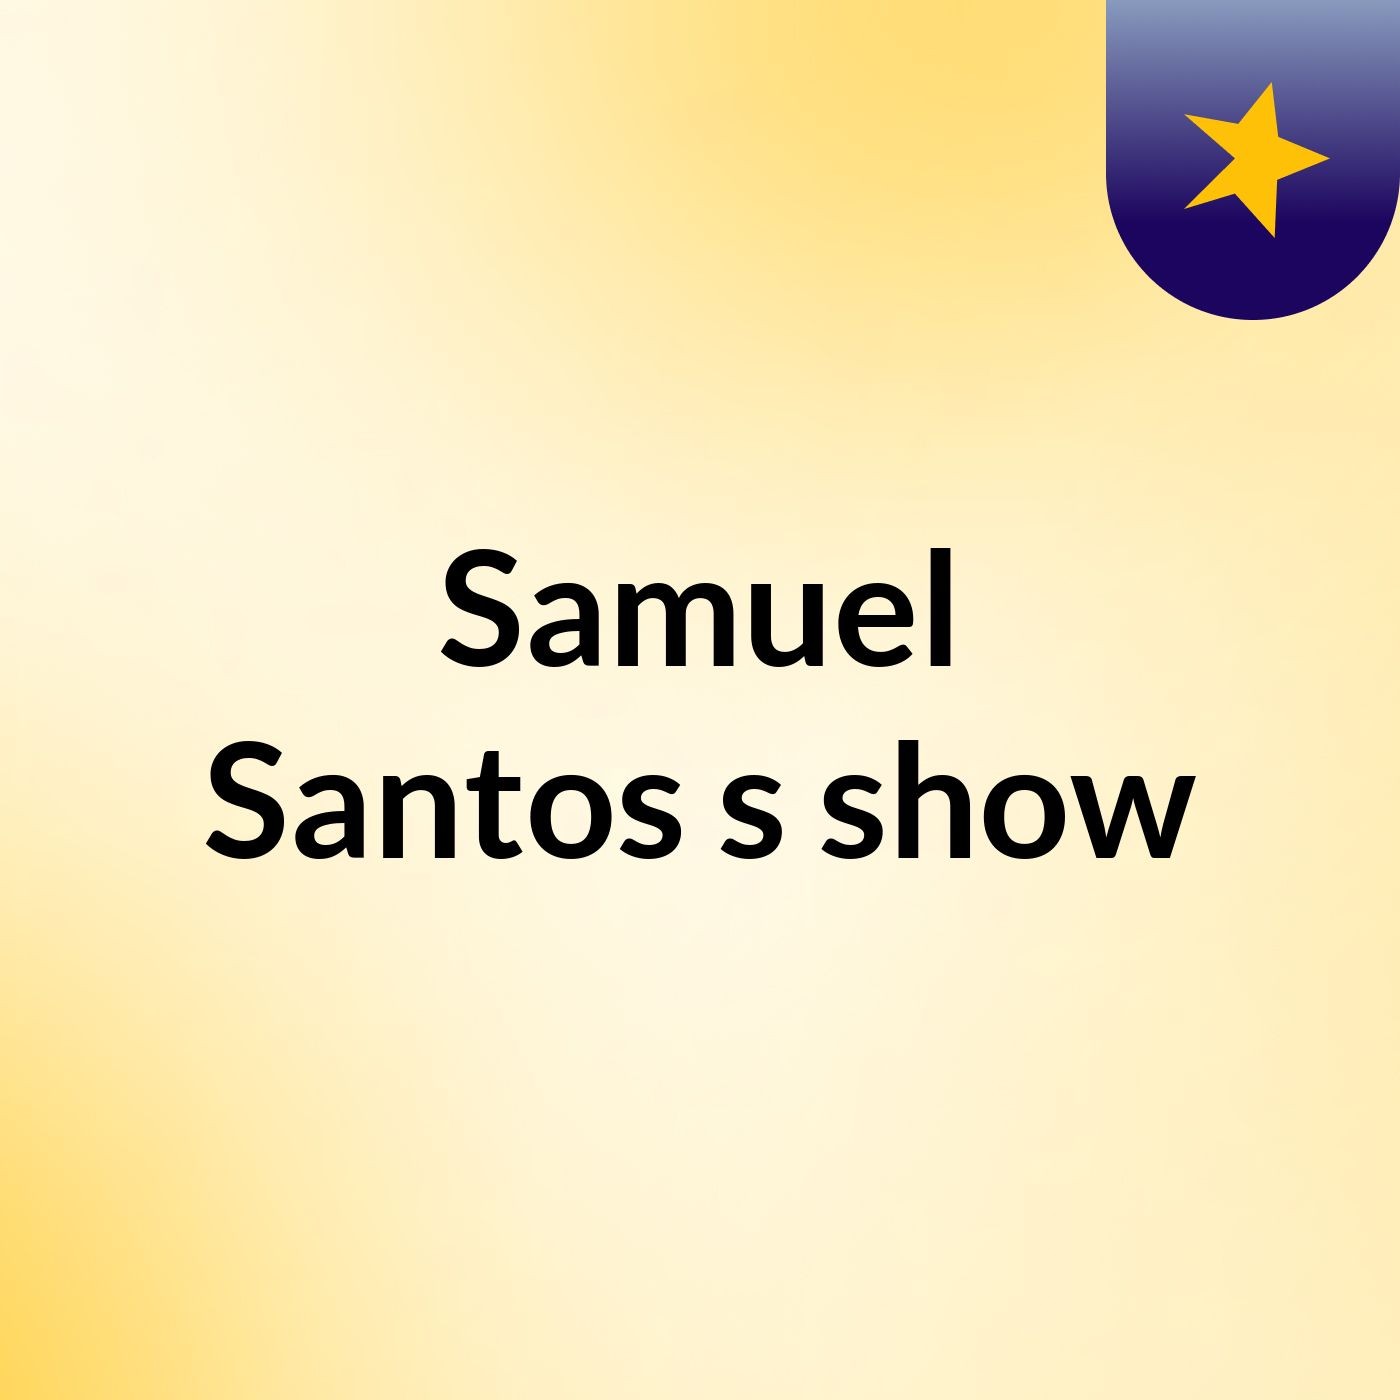 Samuel Santos's show